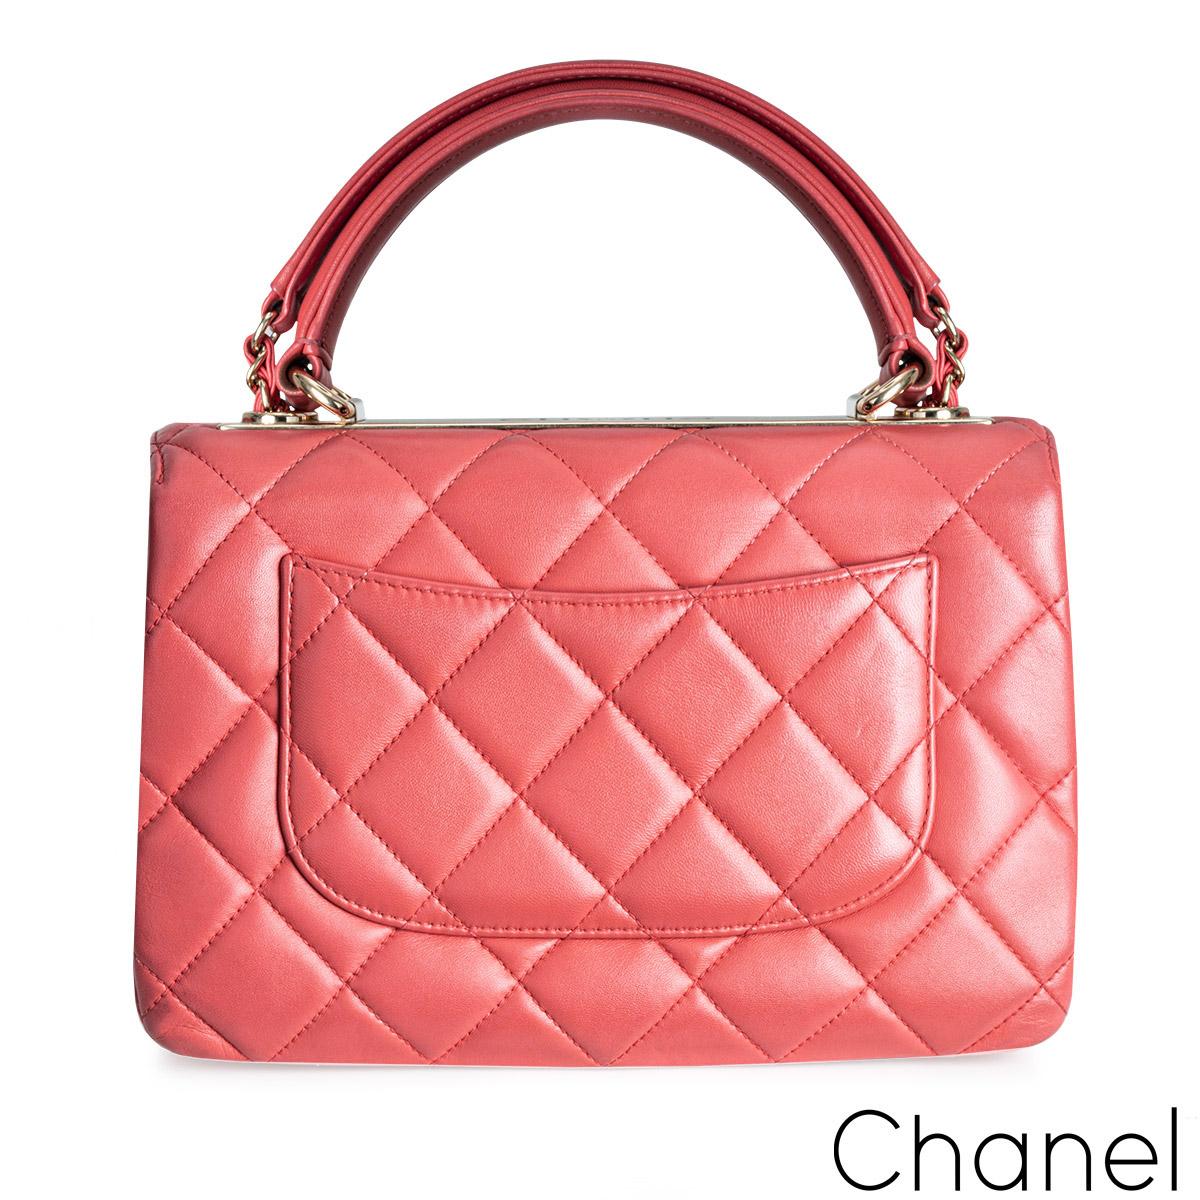 Eine elegante rosa Chanel Small Trendy CC Flap Bag. Das Äußere dieser Trendy ist aus rosafarbenem Lammleder mit den charakteristischen Rautenstichnähten und goldfarbenen Beschlägen gefertigt. Sie verfügt über eine Vorderklappe mit dem